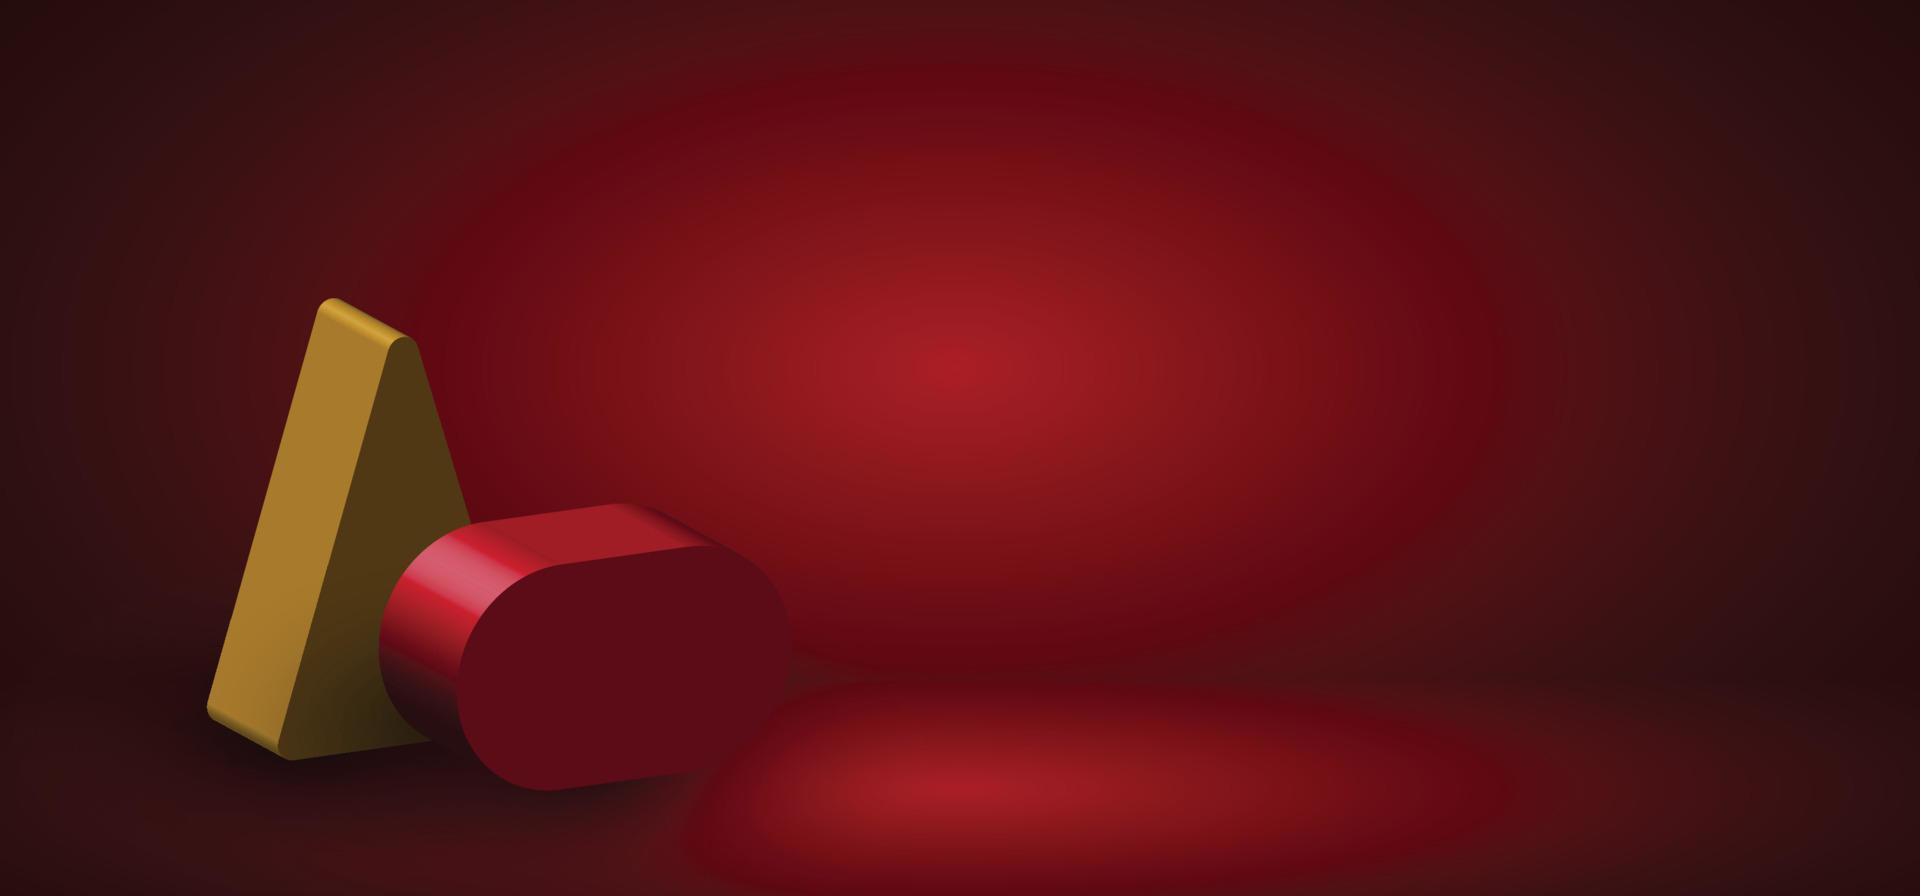 ilustraciones de diseño de representación 3d abstractas de la plantilla de presentación decorativa geométrica. superpuesto con sombra sobre fondo rojo degradado. ilustración vectorial vector